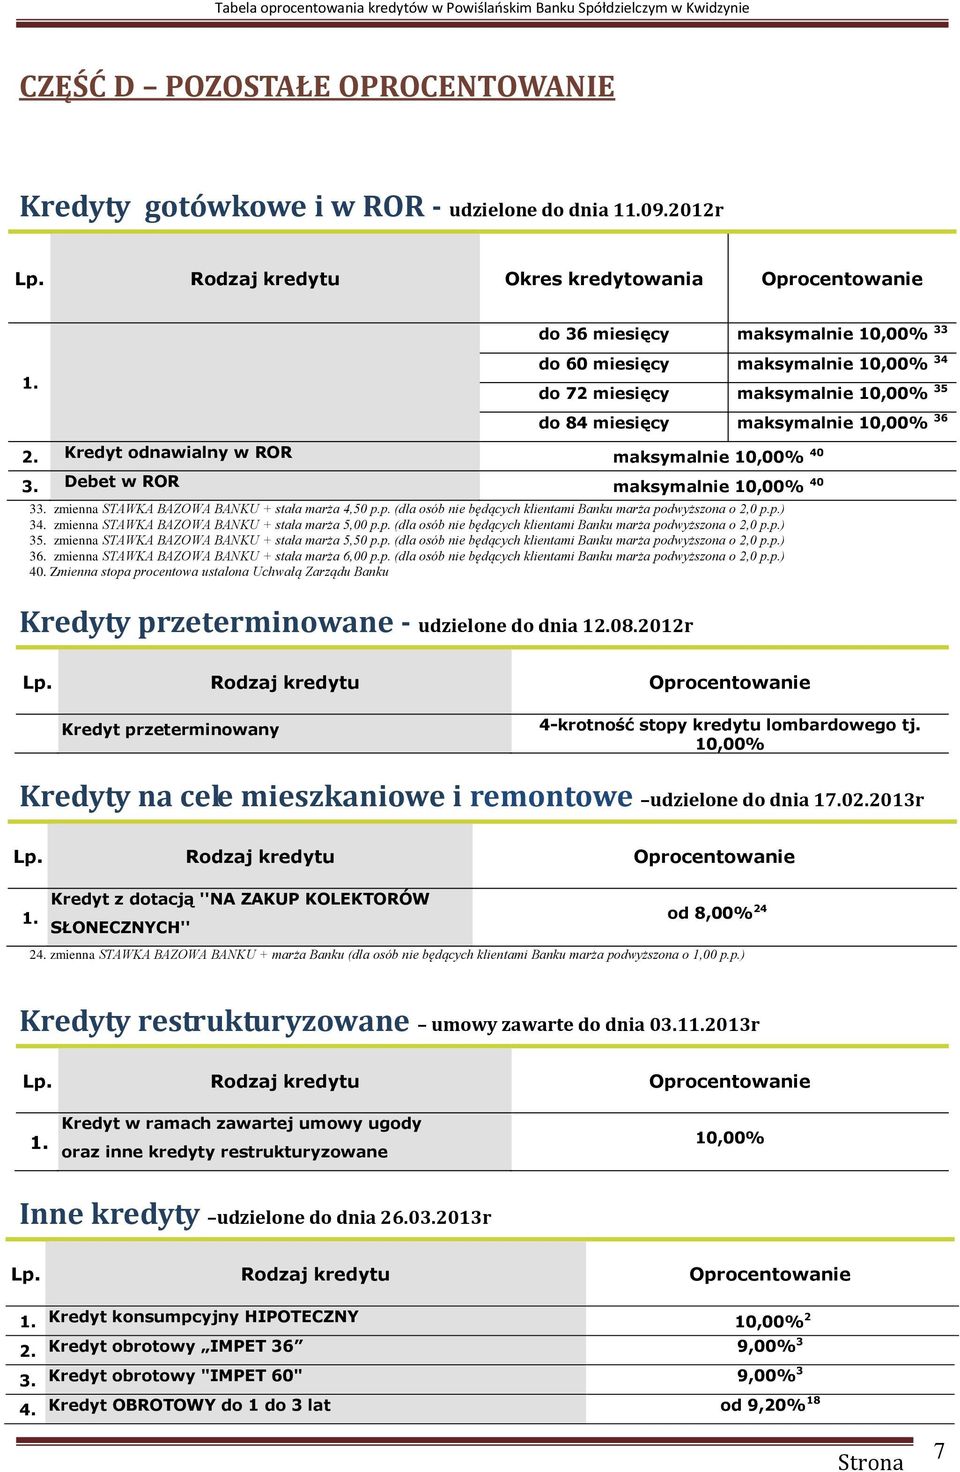 Kredyt odnawialny w ROR maksymalnie 10,00% 40 3. Debet w ROR maksymalnie 10,00% 40 33. zmienna STAWKA BAZOWA BANKU + stała marża 4,50 p.